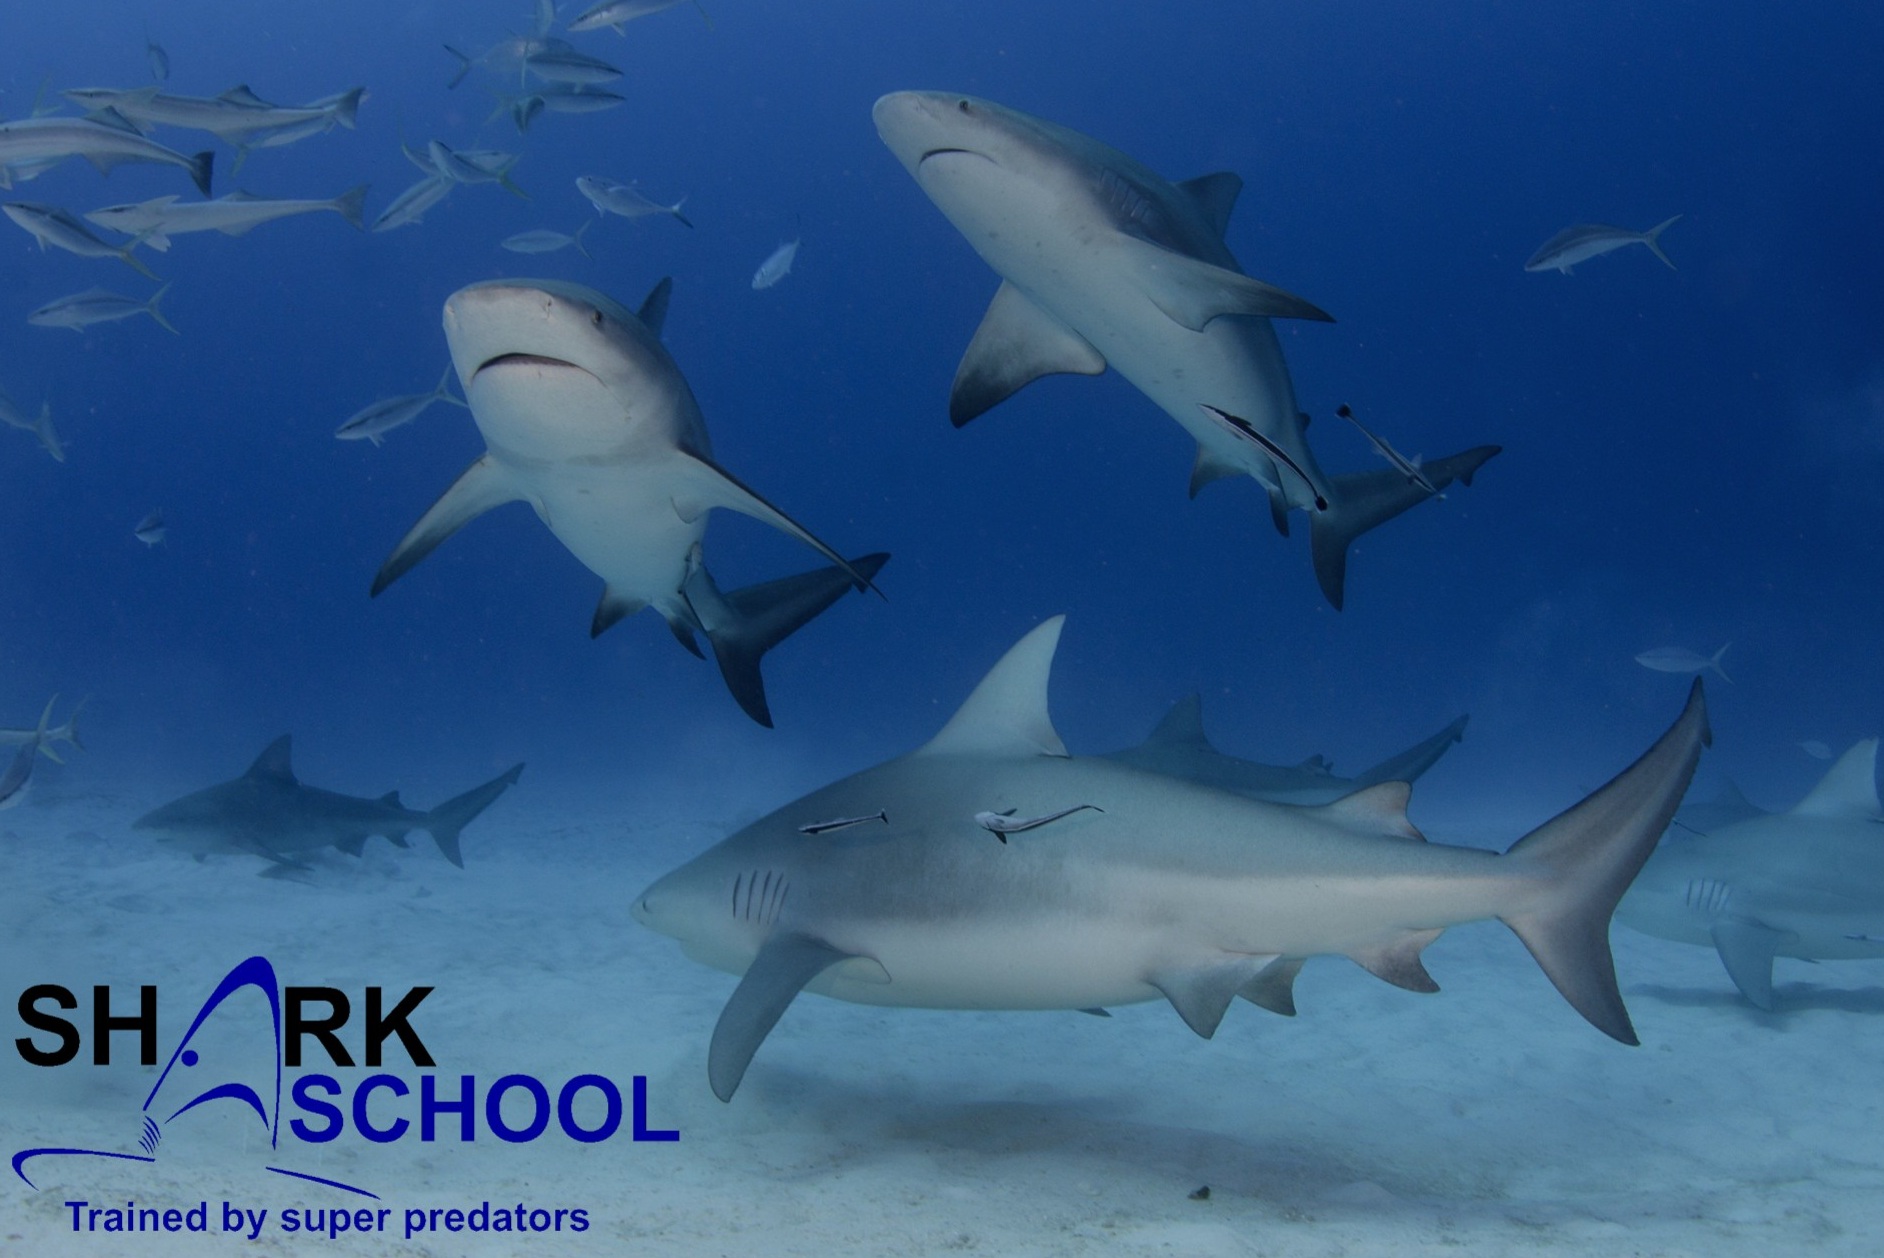 Sharkschool